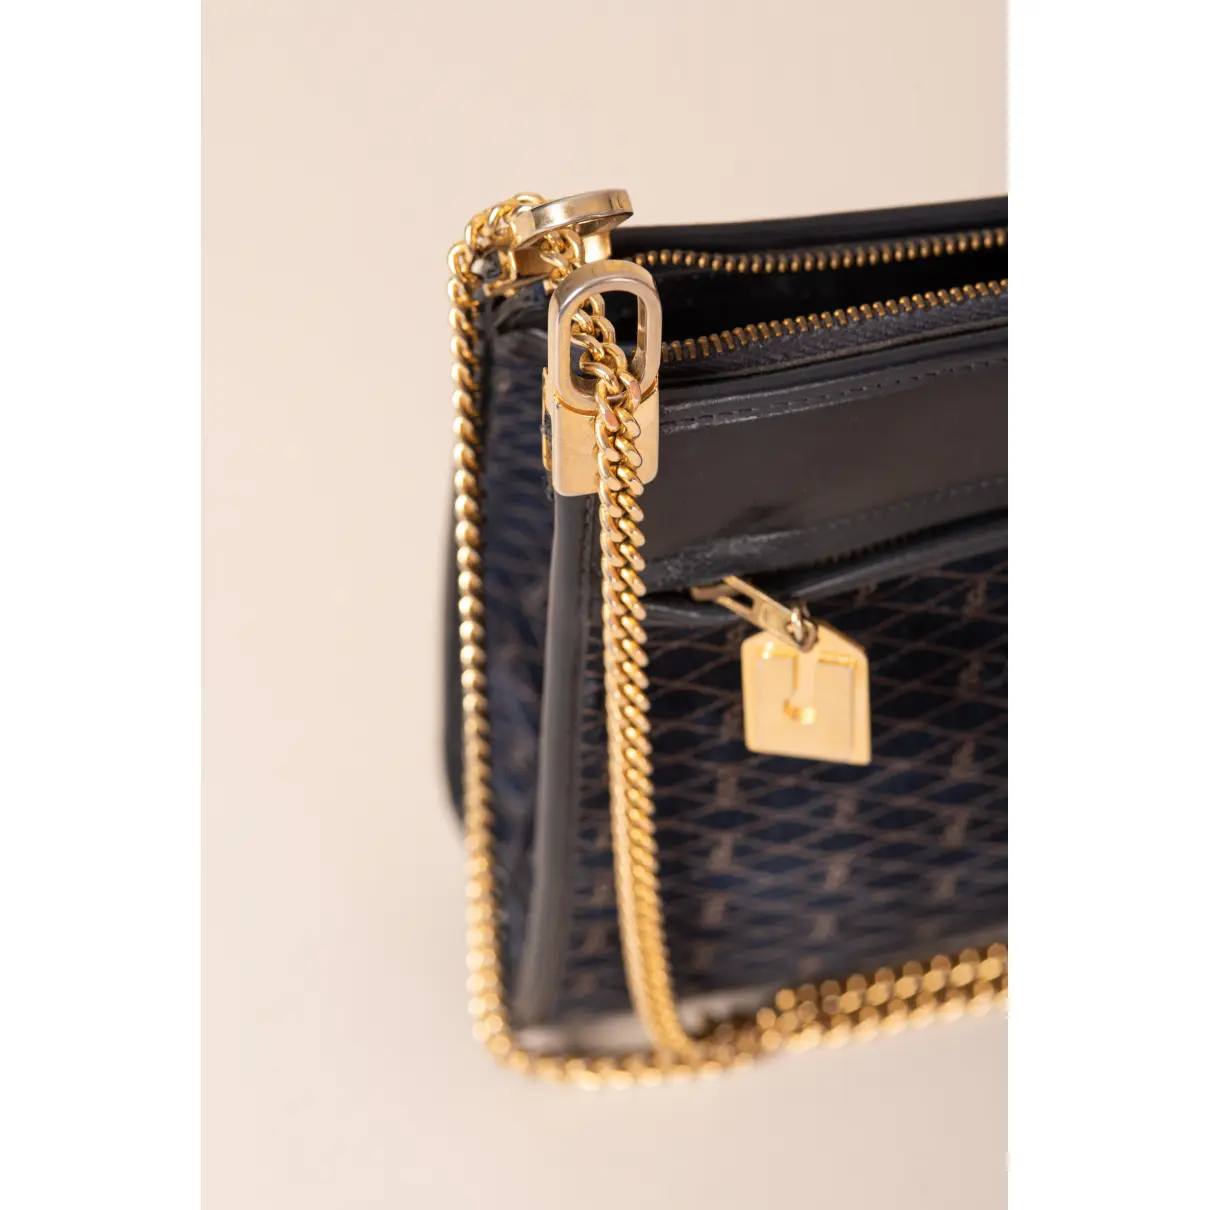 Luxury Charles Jourdan Handbags Women - Vintage